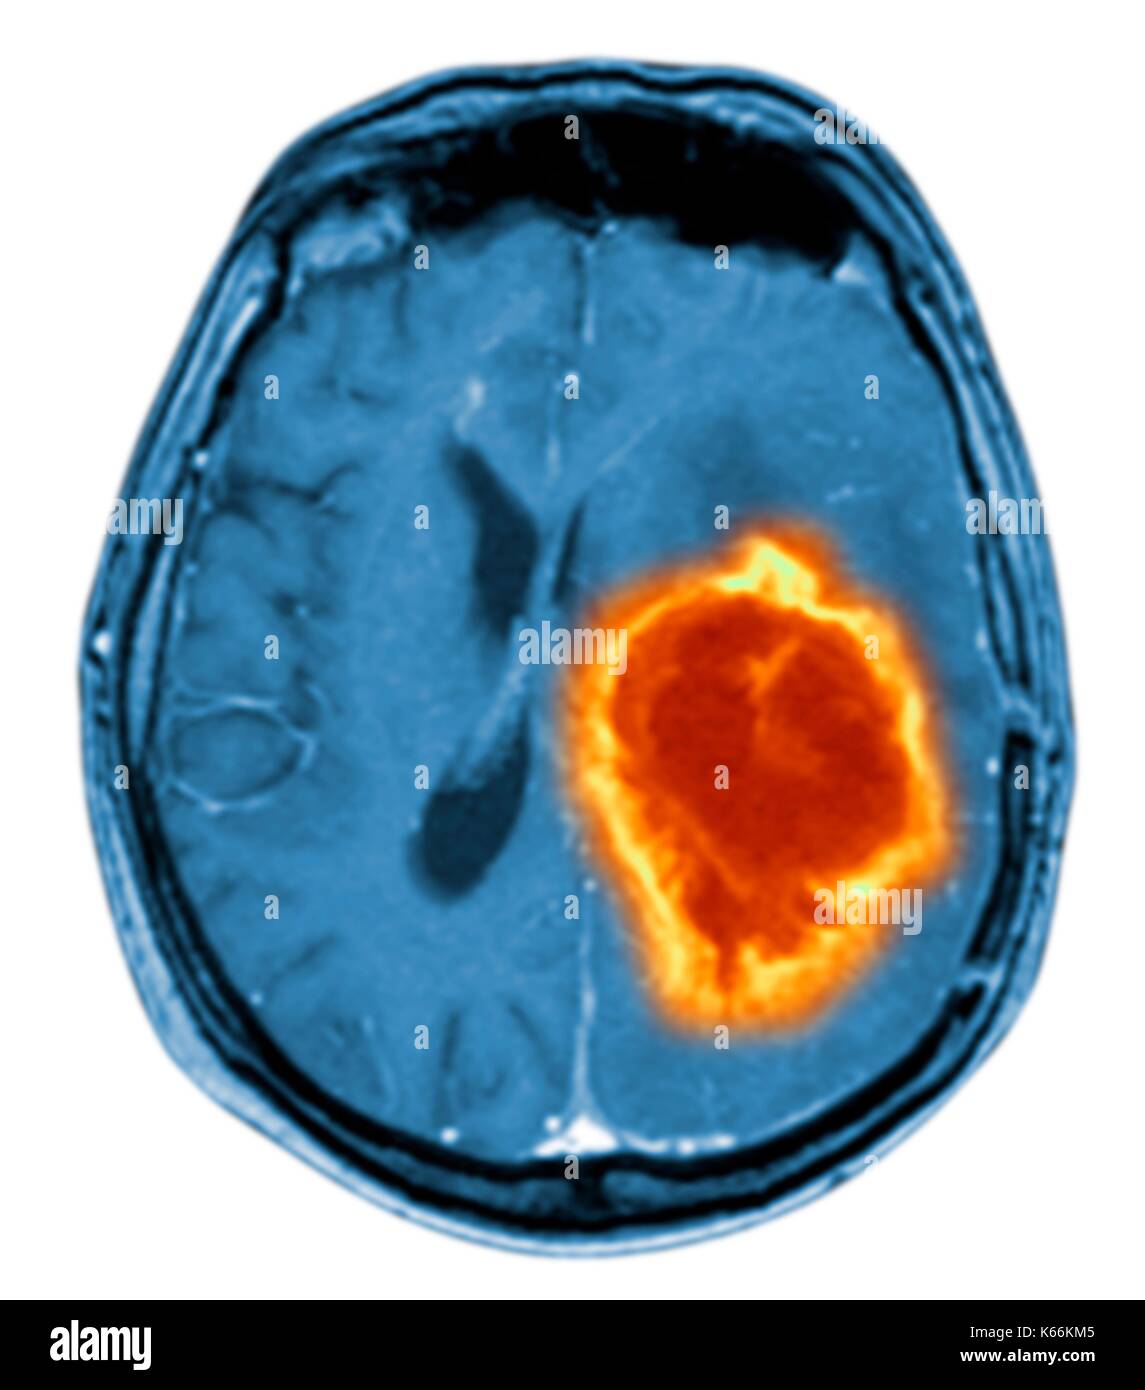 Tumore del cervello. Colorato di Risonanza Magnetica (RM) scansione di una sezione assiale attraverso il cervello che mostra un tumore metastatico. In basso a sinistra è il tumore (rosso-giallo) questo tumore si verifica entro un emisfero cerebrale; l'altro emisfero è a destra. I bulbi oculari - non visibile - sono al top. Il cancro metastatico è una malattia secondaria la diffusione di cancro altrove nel corpo. Metastatica di tumori cerebrali sono maligni. Tipicamente essi provocano la compressione del cervello e danni ai nervi Foto Stock